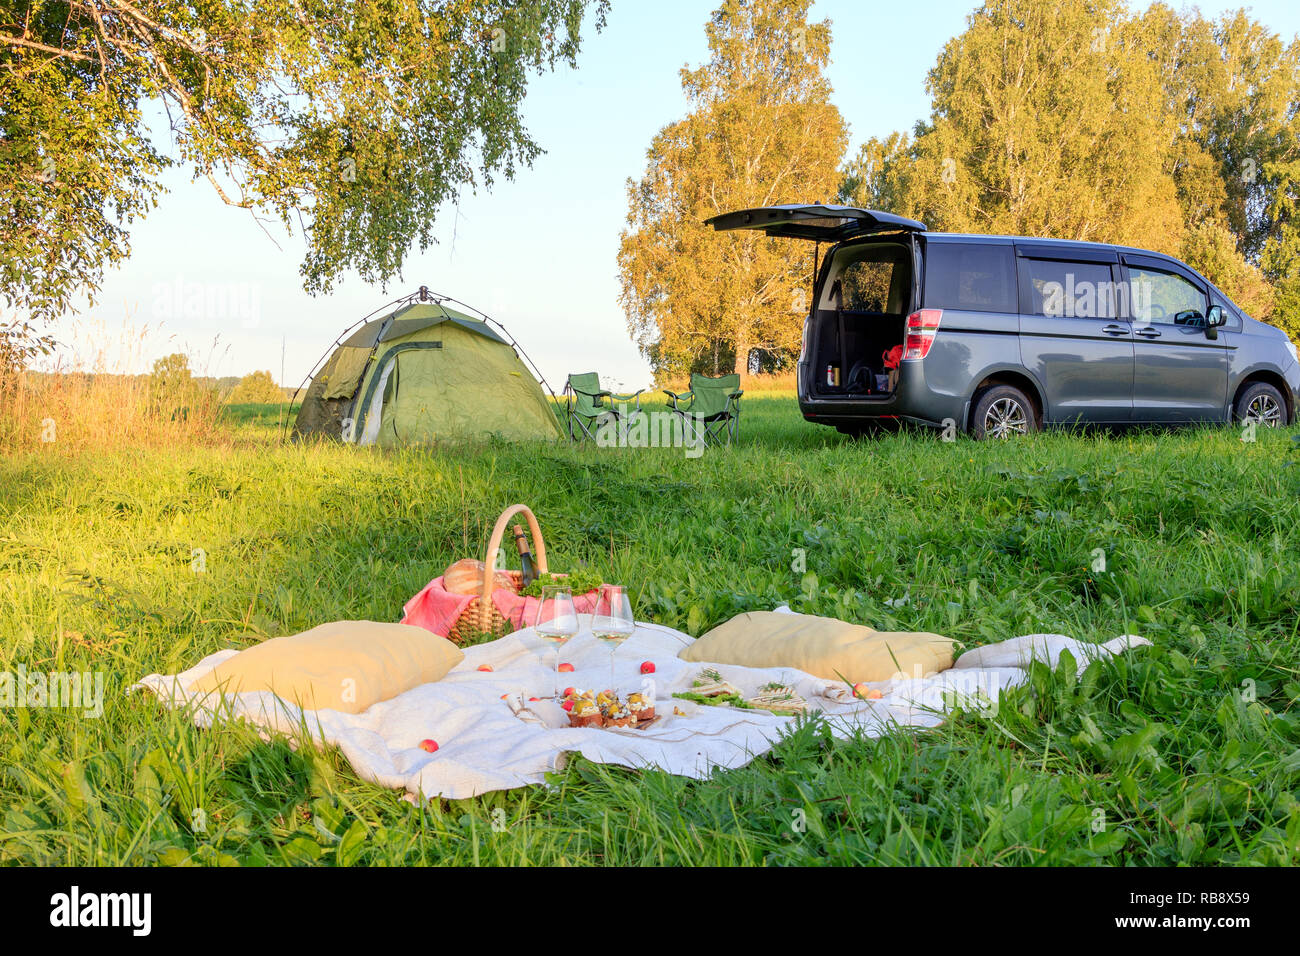 Picknick im Wald, Zelt und Camp Stühle, grau Minibus mit offener Tür, Decke, Weidenkorb, Weingläser, Snacks, Obst, Brot, Kissen. Konzept Stockfoto